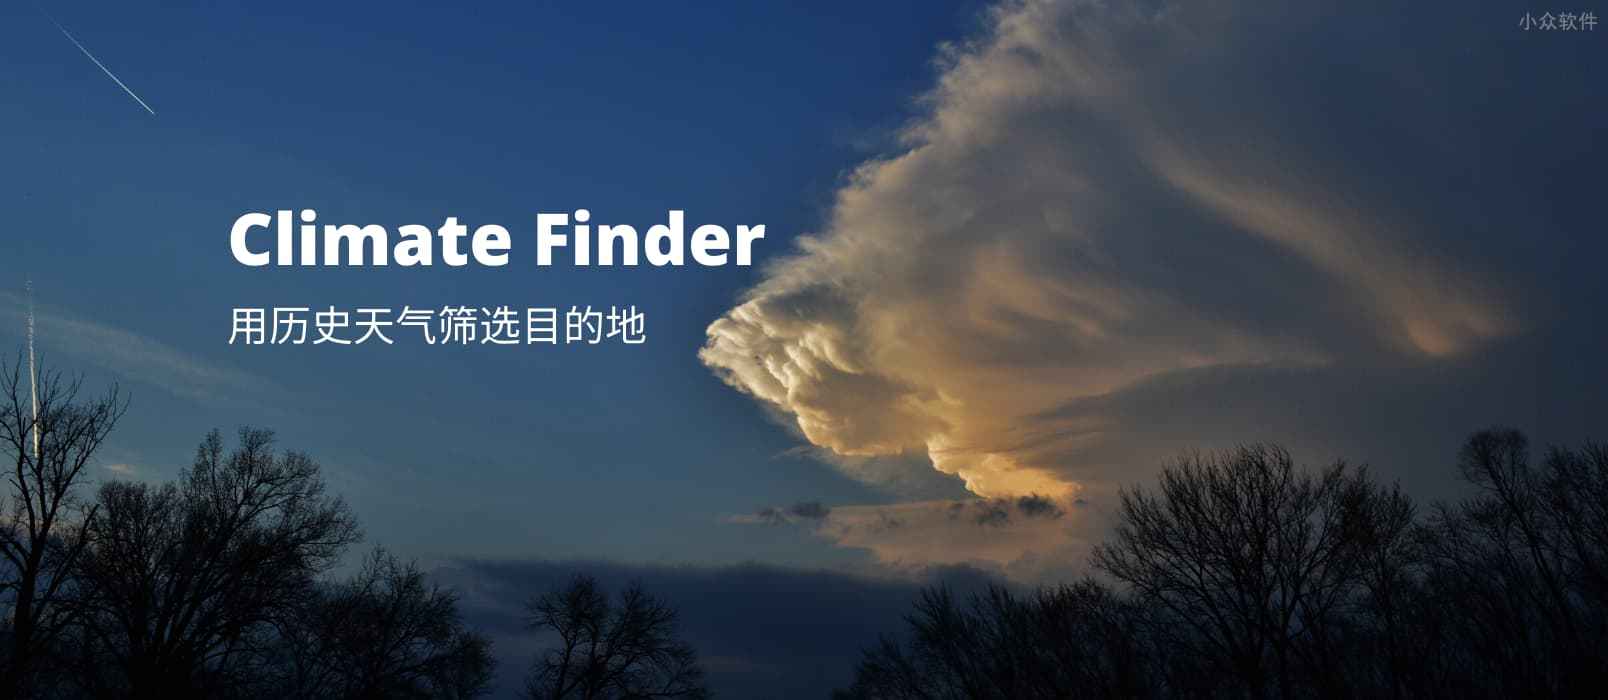 Climate Finder - 用历史天气数据筛选旅游目的地 1